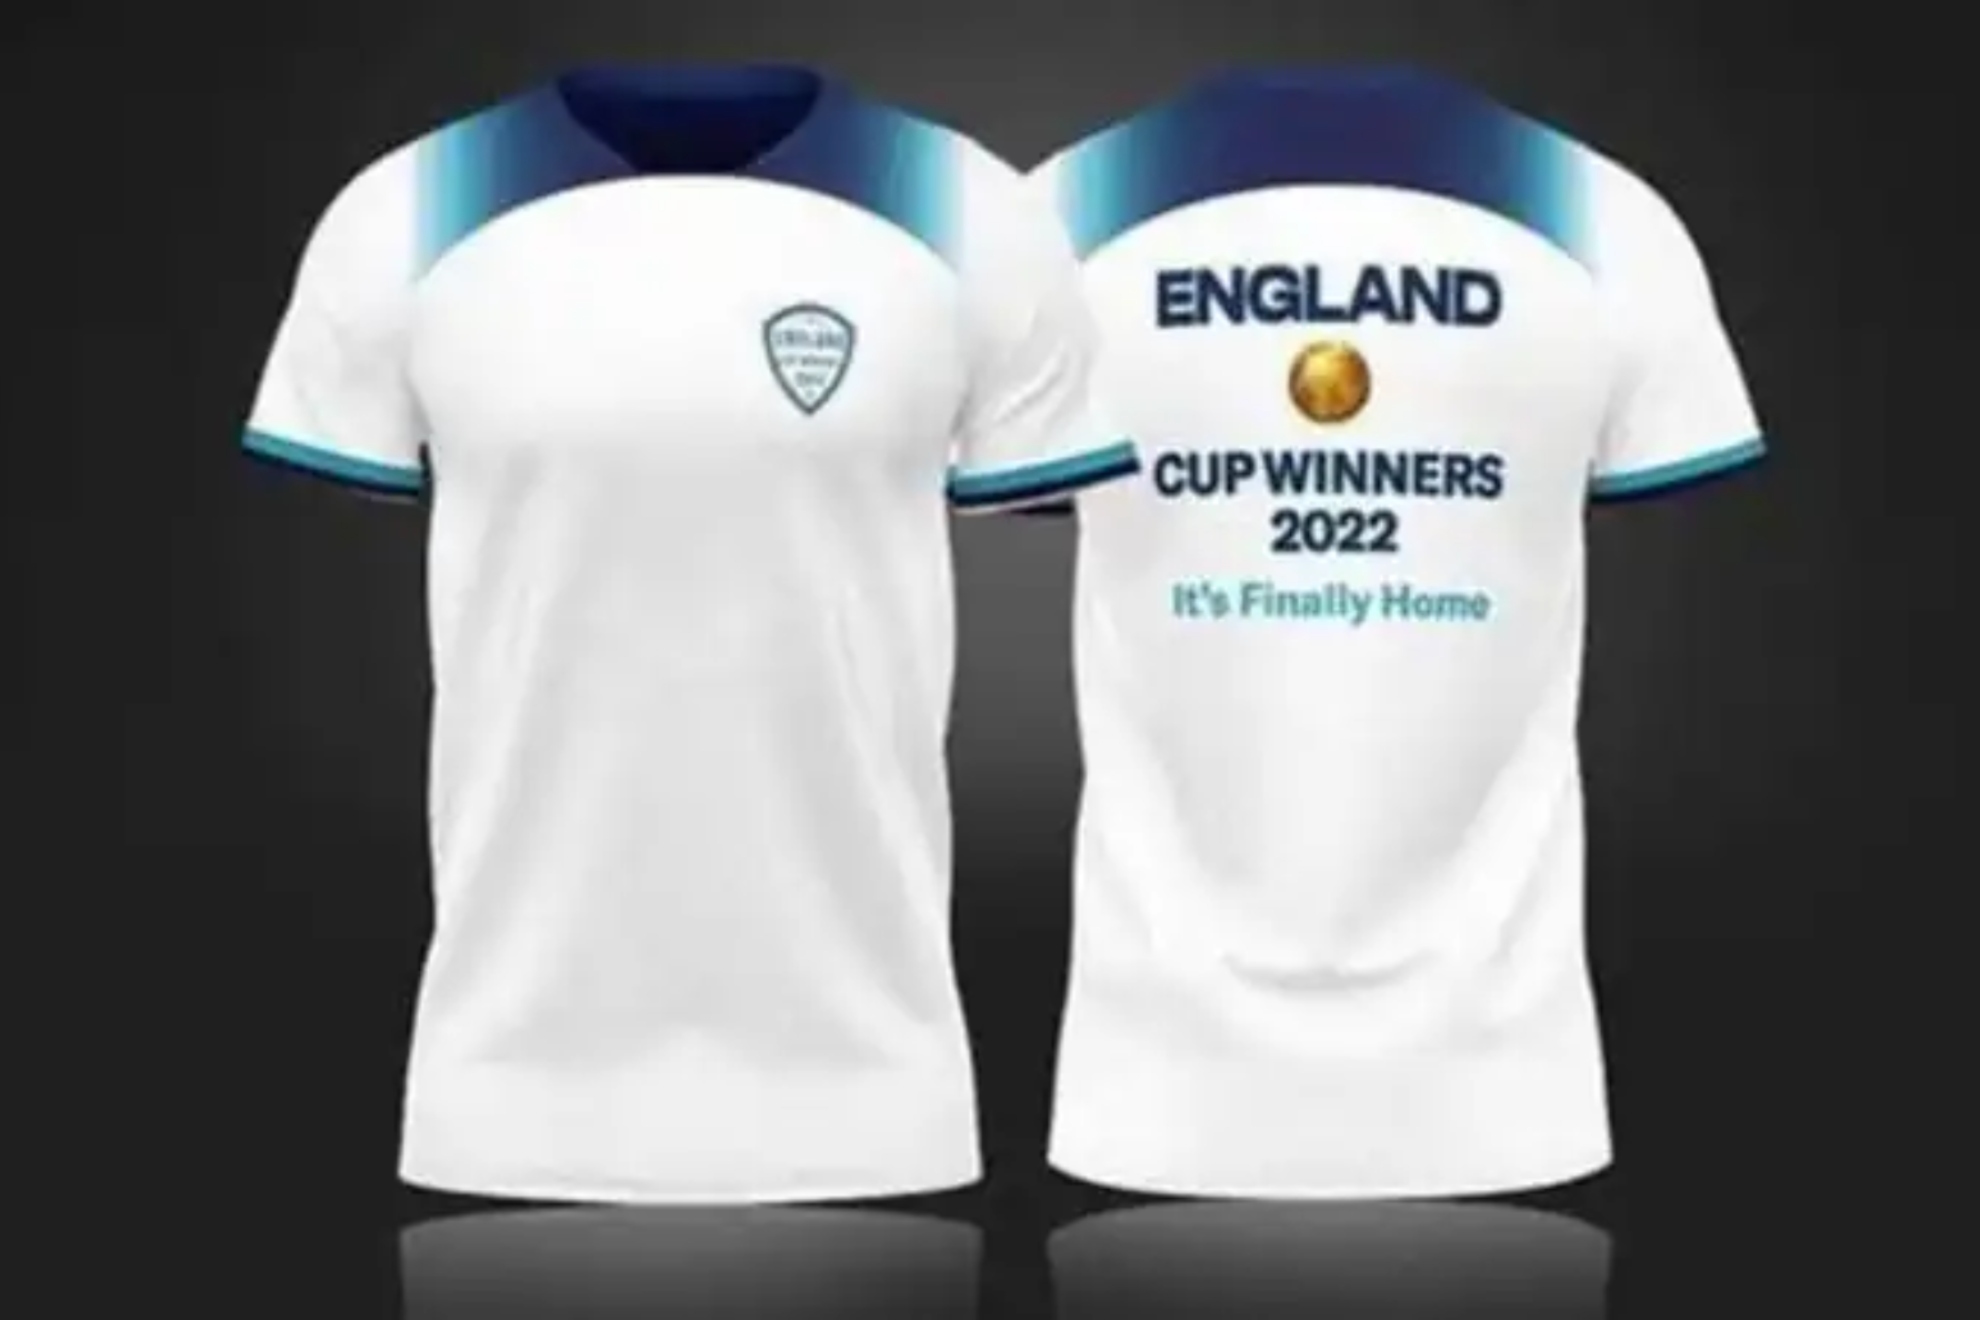 Las camisetas impresas con el lema de Inglaterra Campen.